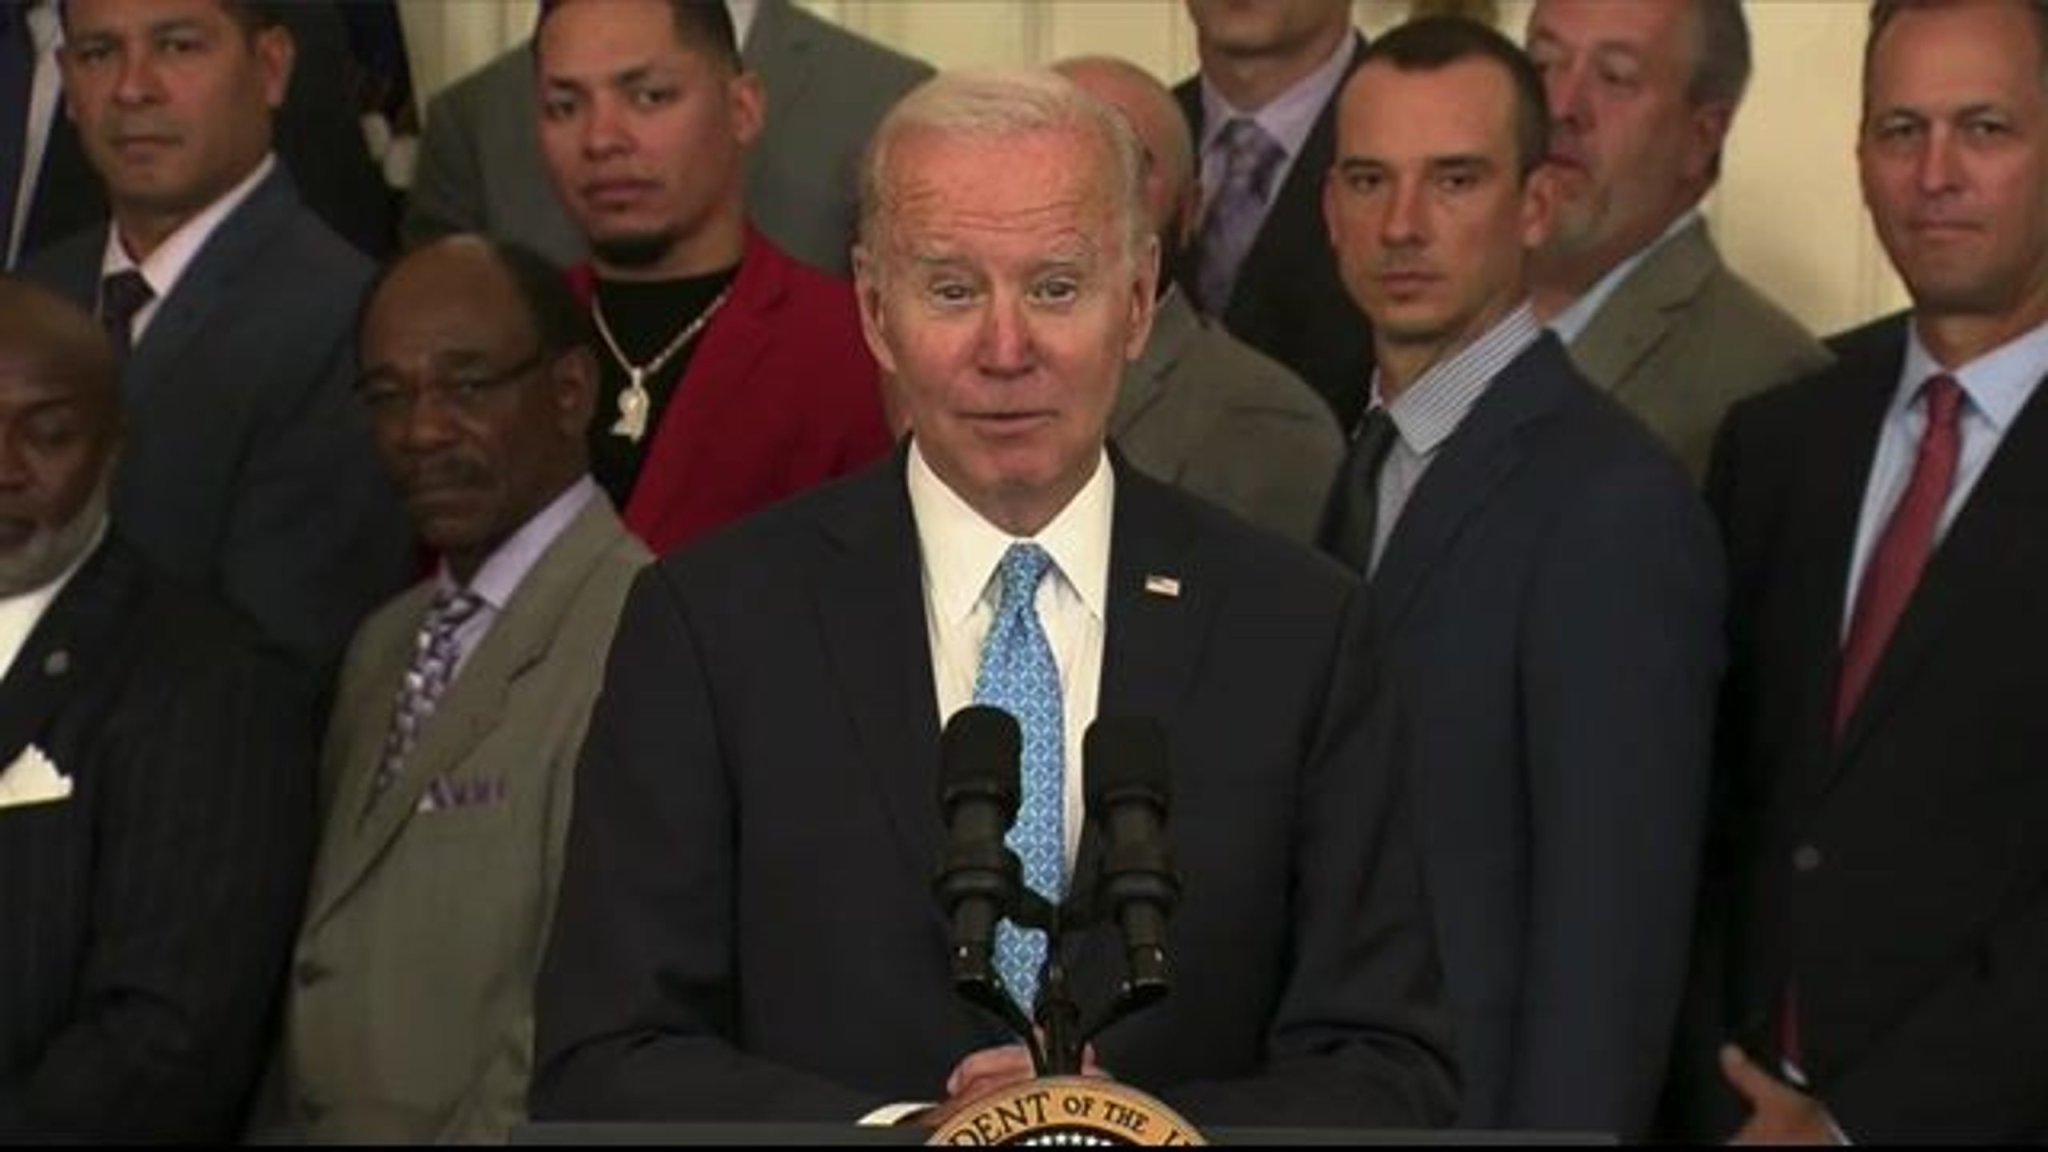 President Biden jokes as the Atlanta Braves visit the White House to celebrate their 2021 World Series title.